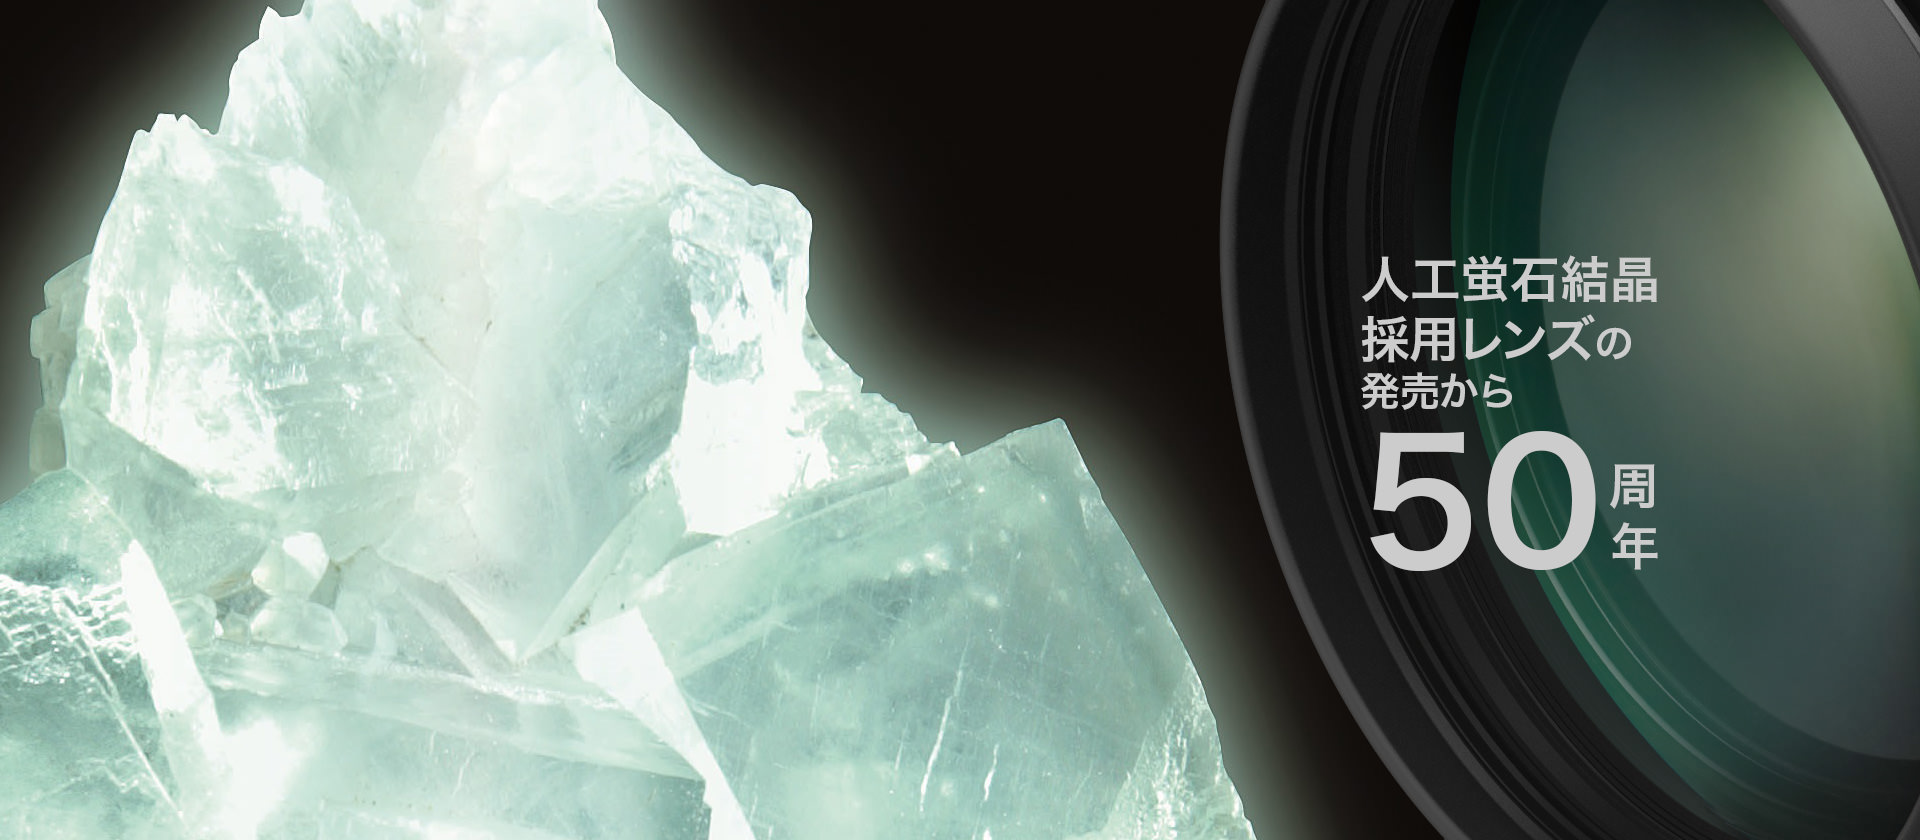 人工蛍石結晶採用レンズの発売から50周年